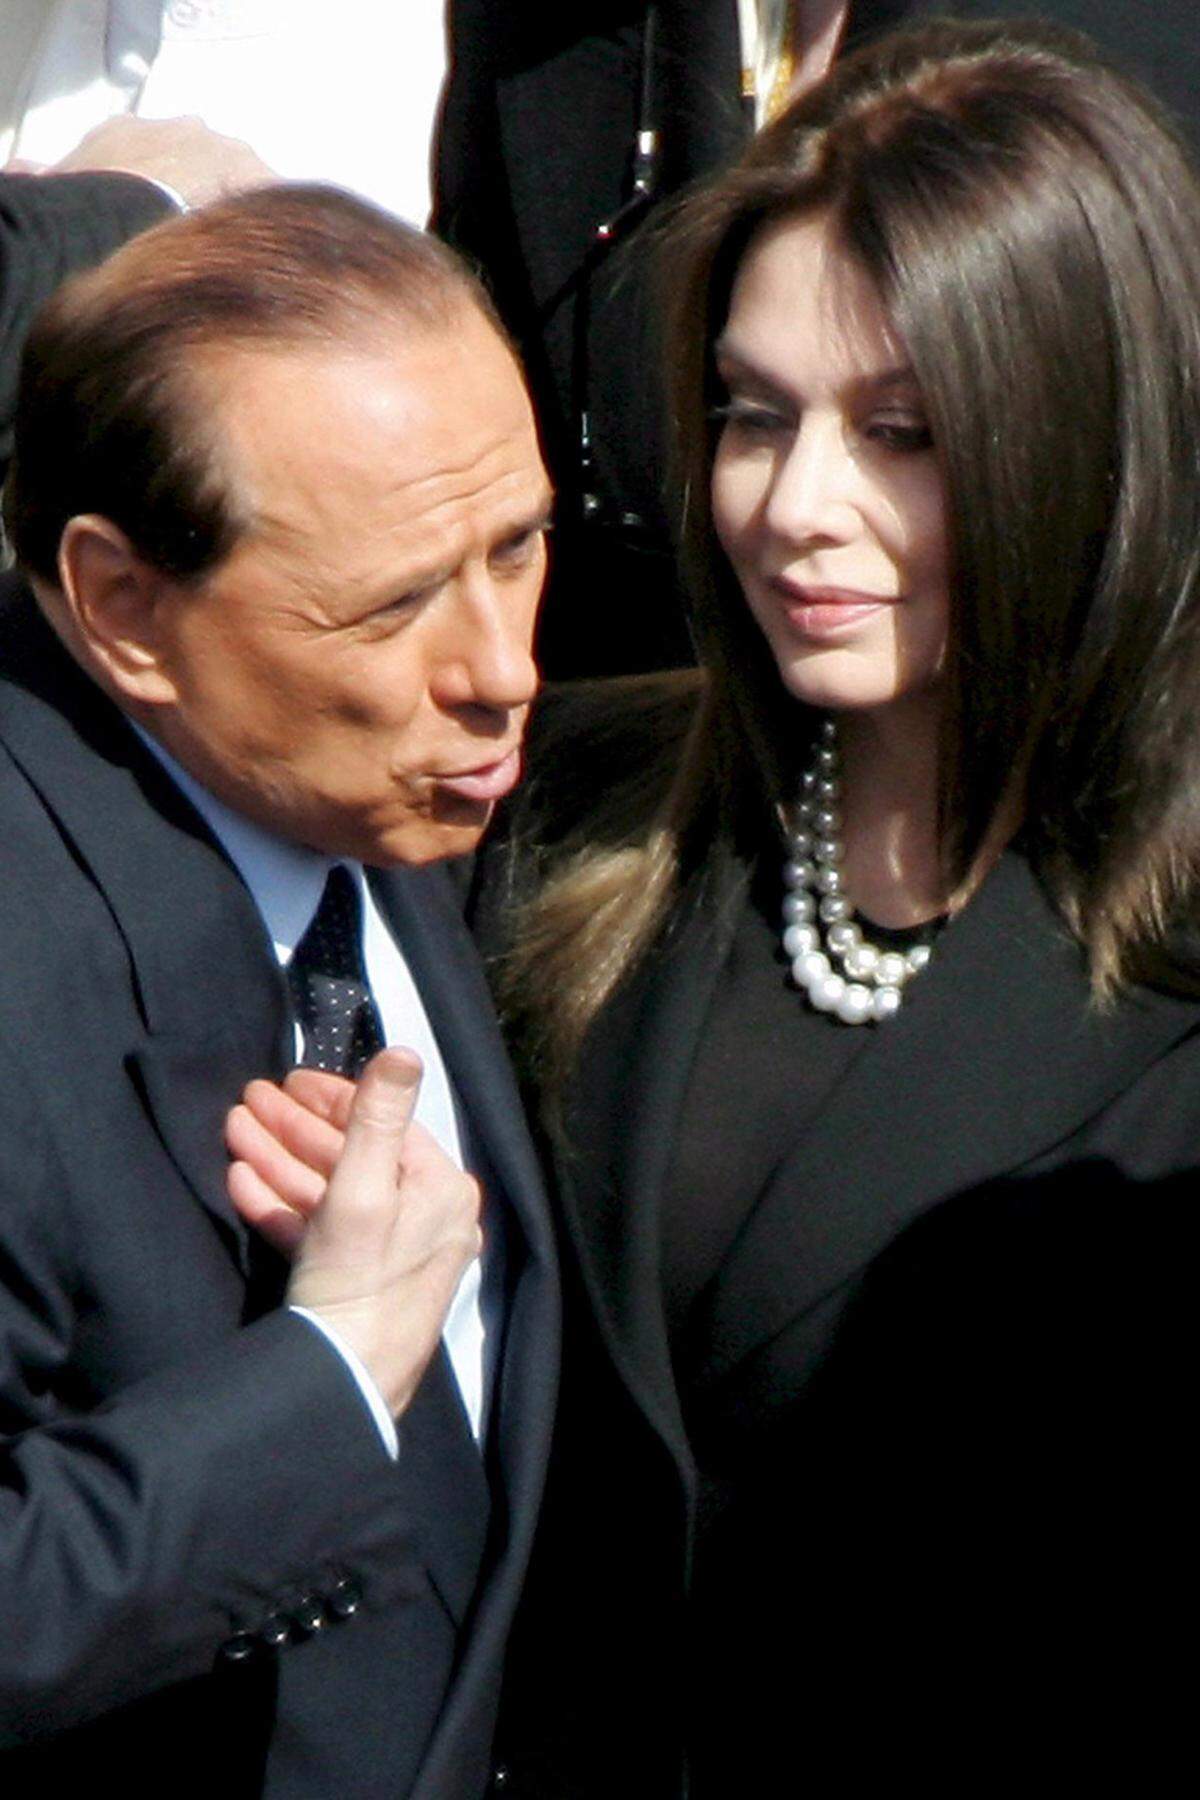 20 Jahre lang war sie die stille Ehefrau an der Seite des schillernden Regierungschefs und Medientycoons. Seit Berlusconis Einstieg in die Politik hatten sie die Italiener nur selten in ihrer Rolle als First Lady in der Öffentlichkeit erlebt. Doch im Mai 2009 platzte der heute 53-jährigen Ex-Schauspielerin der Kragen. Sie kündigte die Scheidung an.